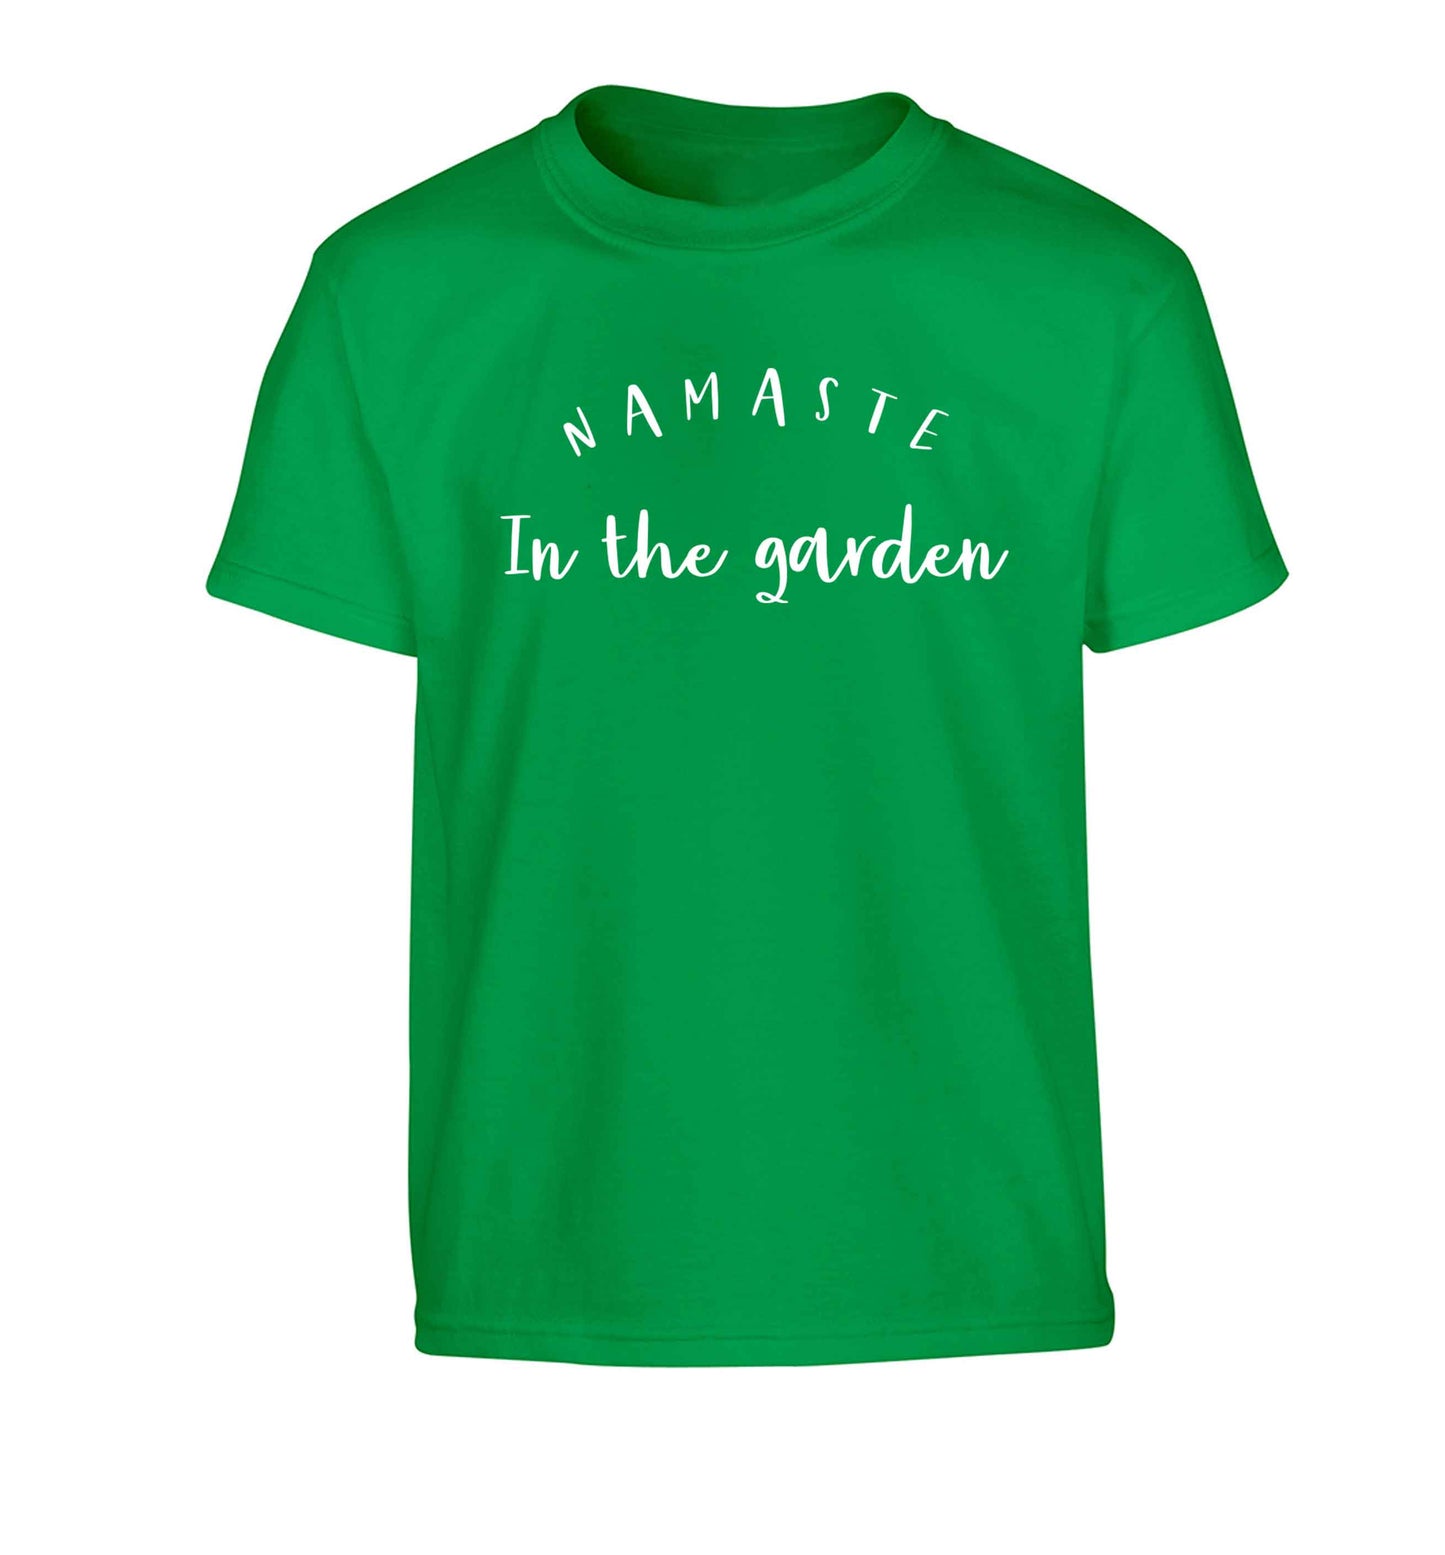 Namaste in the garden Children's green Tshirt 12-13 Years